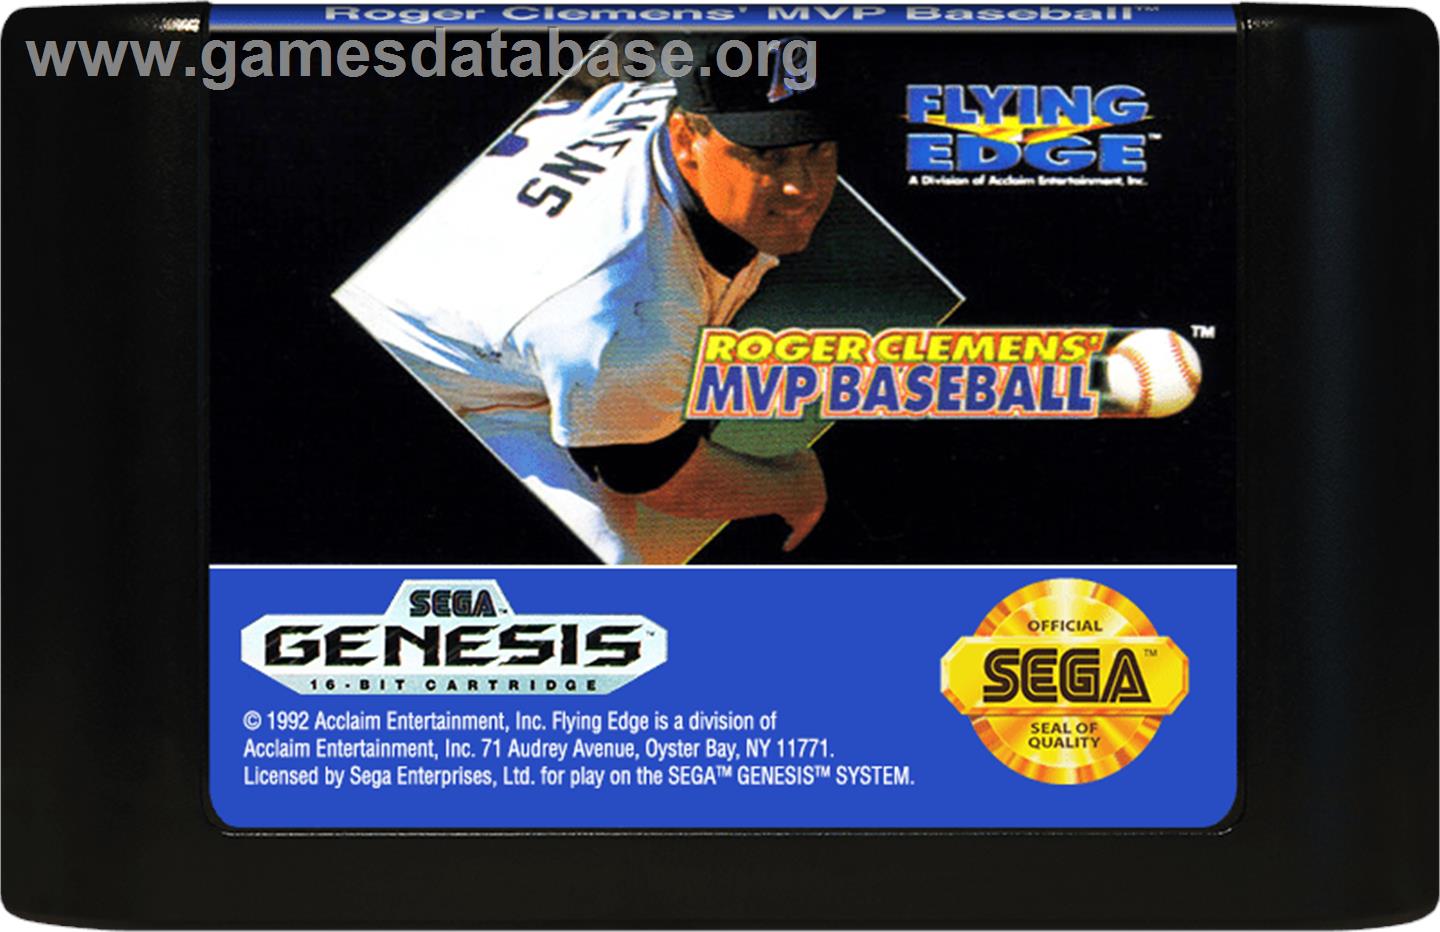 Roger Clemens' MVP Baseball - Sega Genesis - Artwork - Cartridge